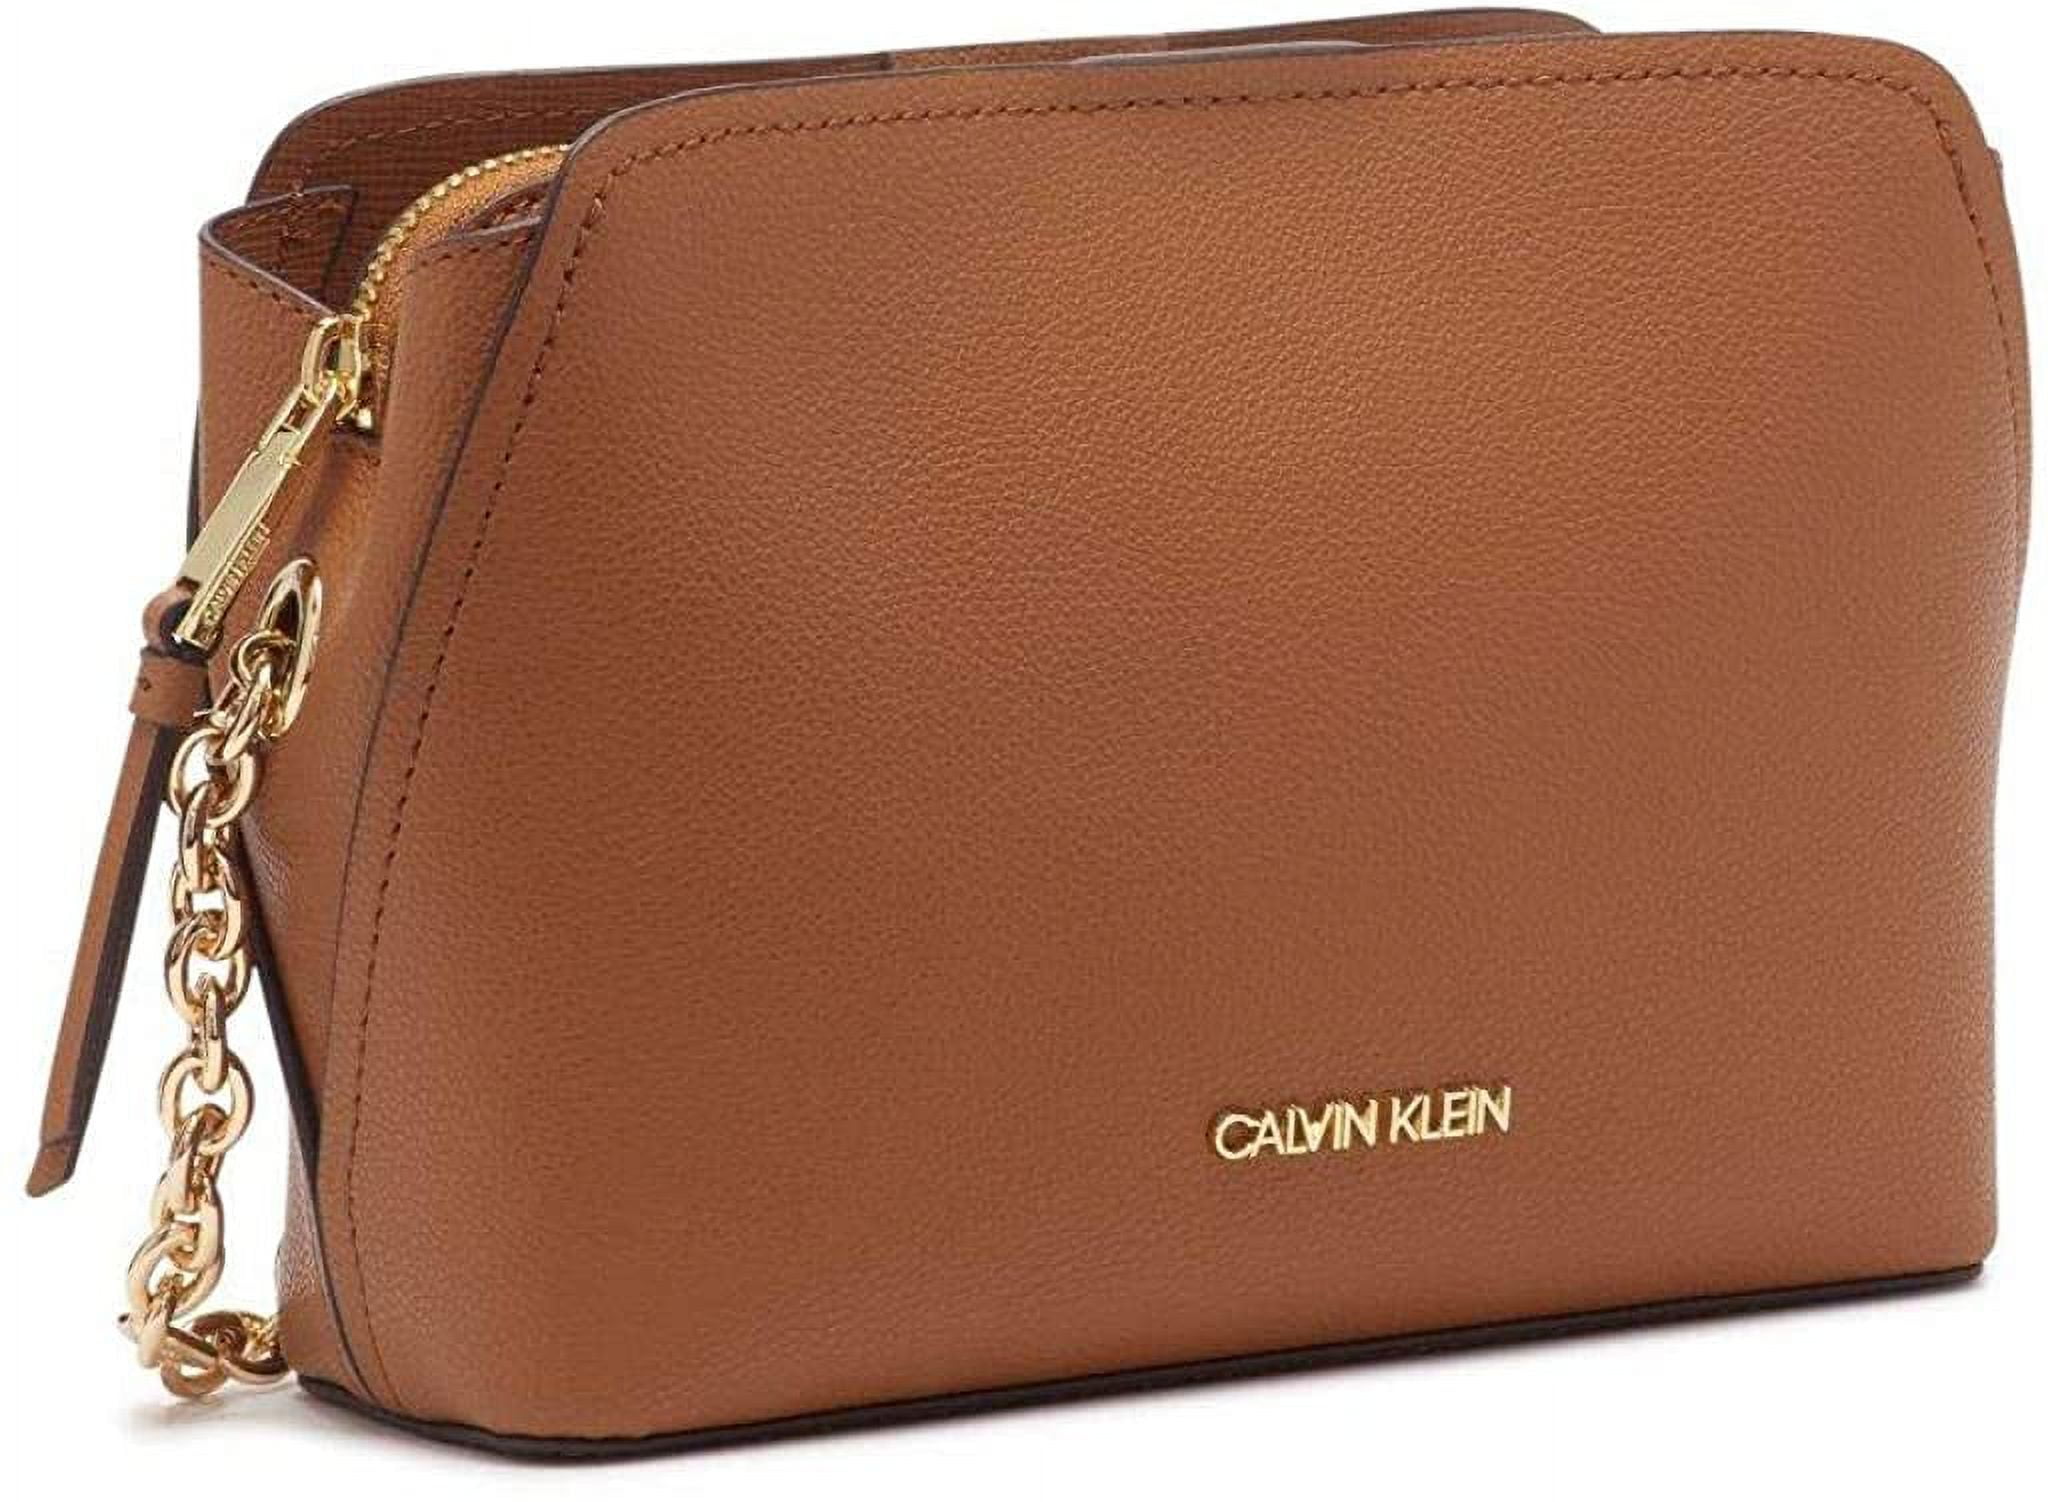 Calvin Klein Hailey Micro Pebble Shoulder Bag